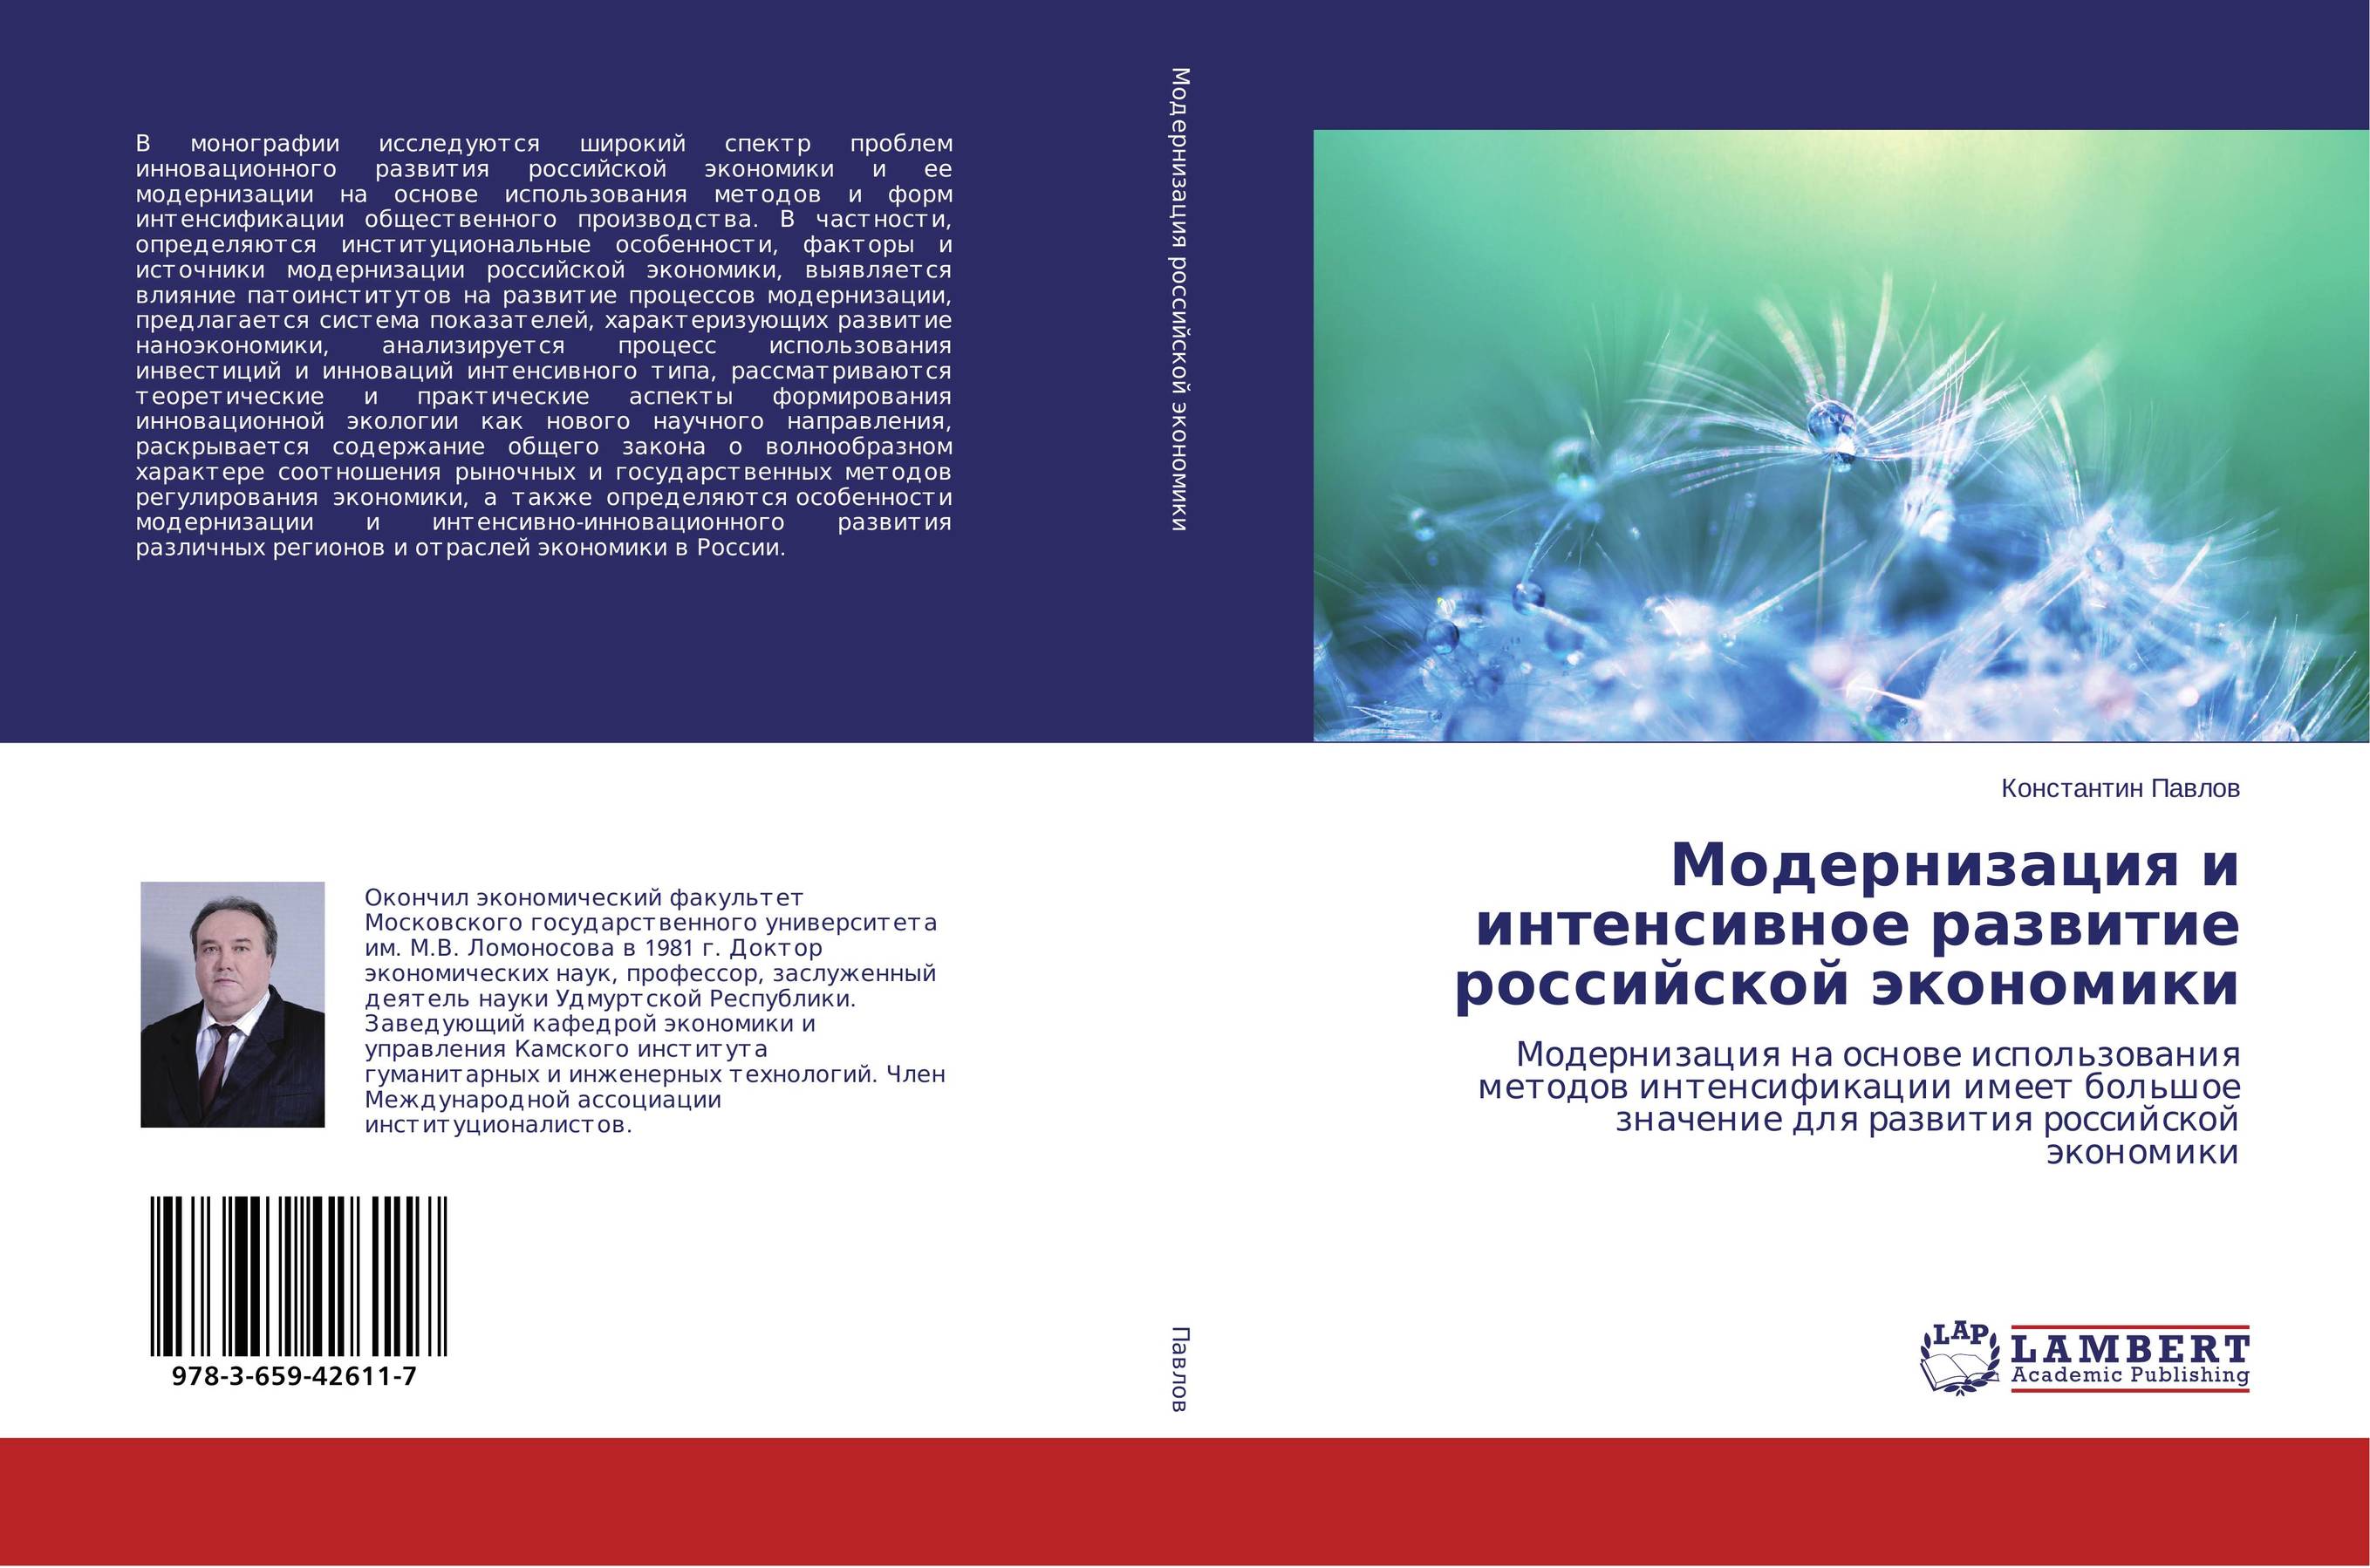 
        Модернизация и интенсивное развитие российской экономики. Модернизация на основе использования методов интенсификации имеет большое значение для развития российской экономики.
      